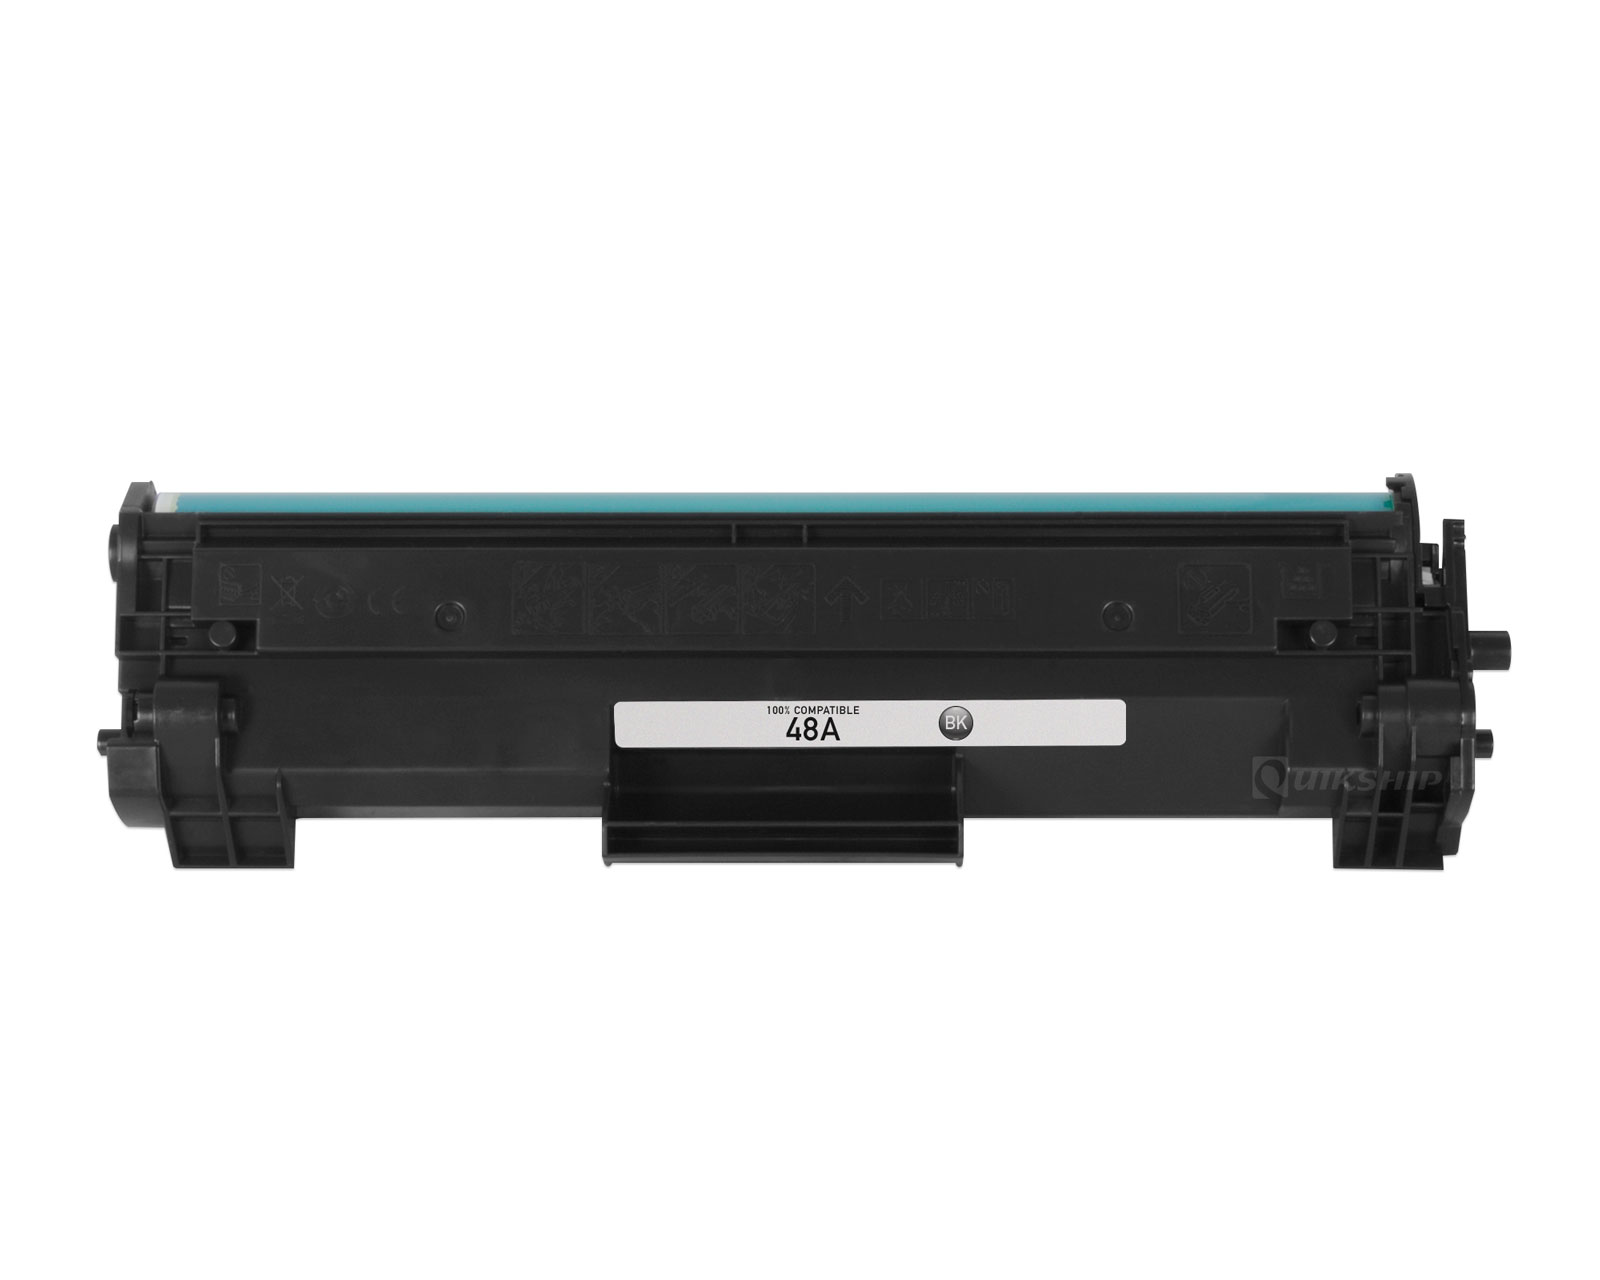 embargo Næste pålægge HP LaserJet Pro MFP M28a Toner Cartridge - 1,000 Pages